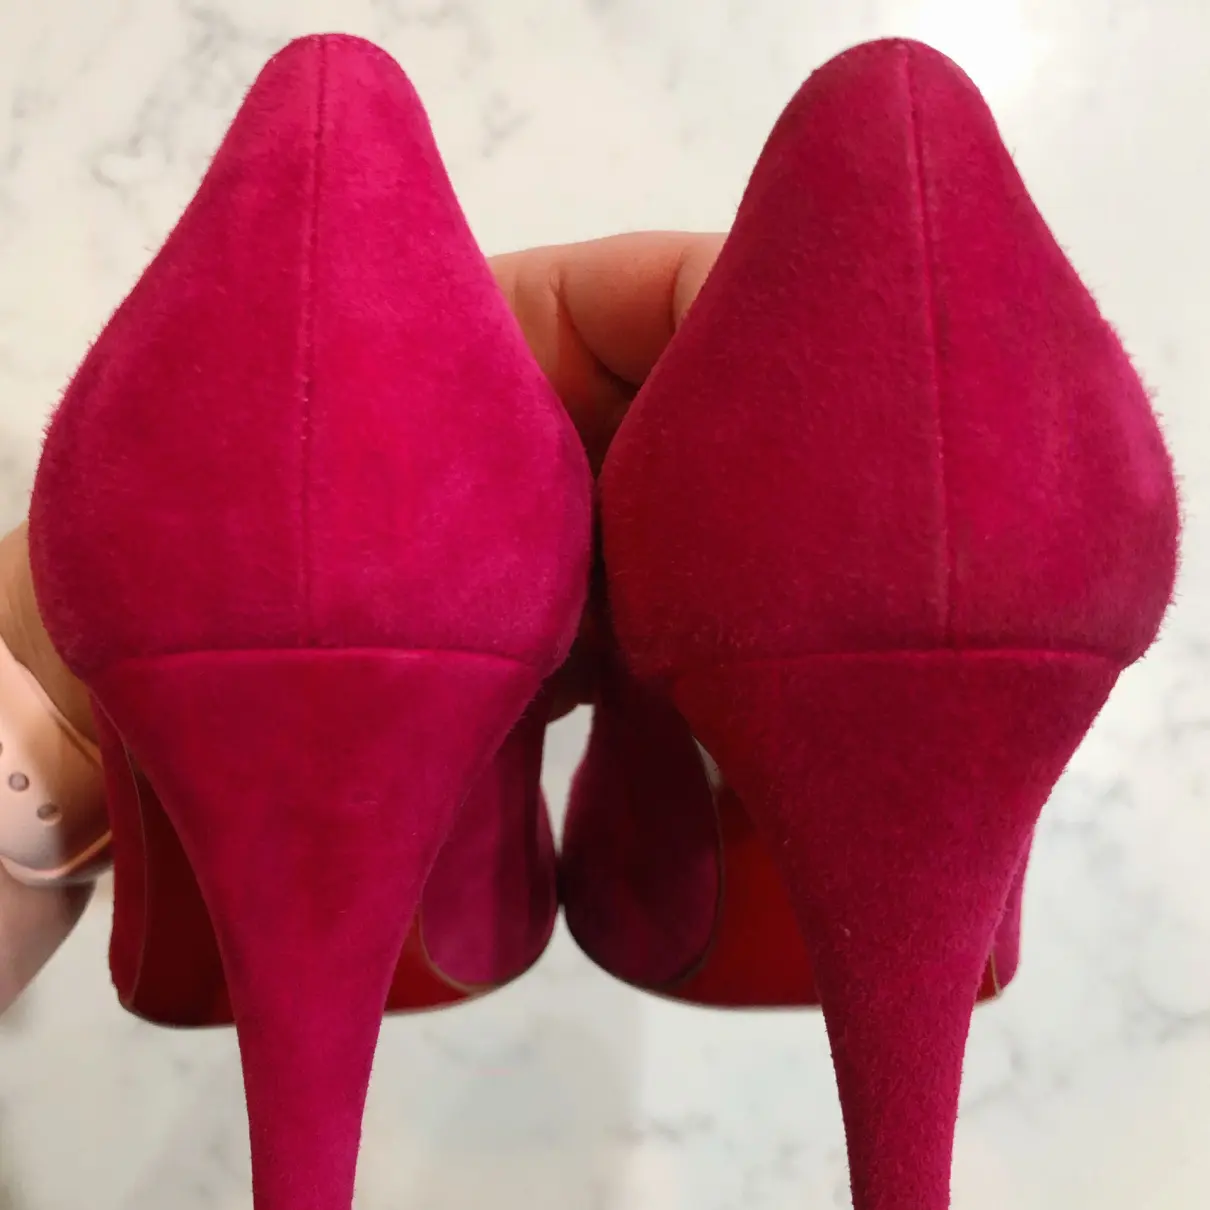 Buy Christian Louboutin Simple pump heels online